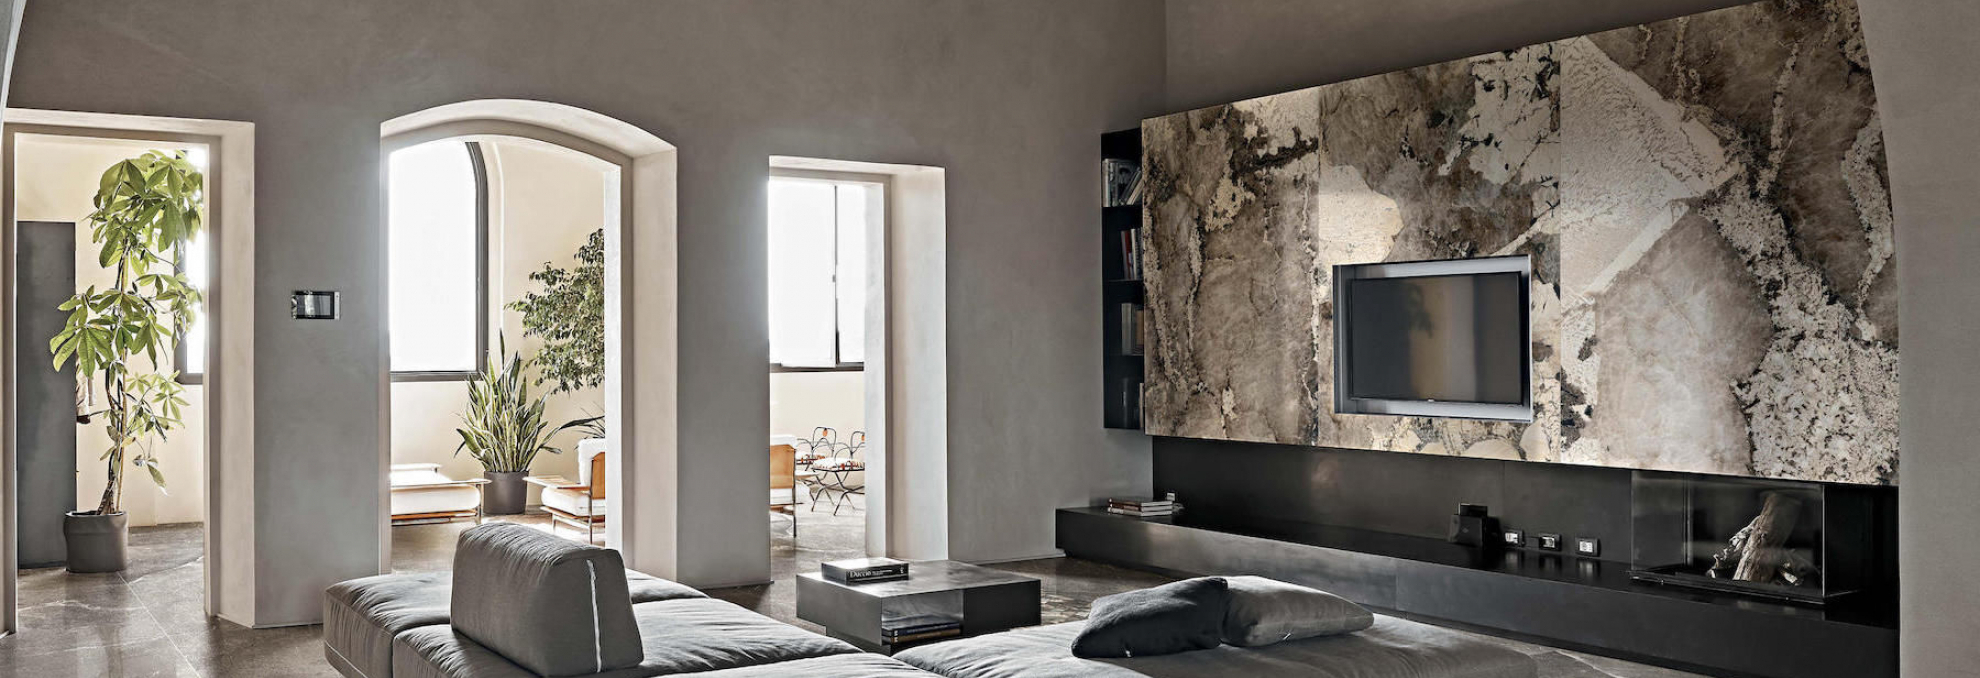 Obložení TV stěny a dlažba ze série Heritage Luxe